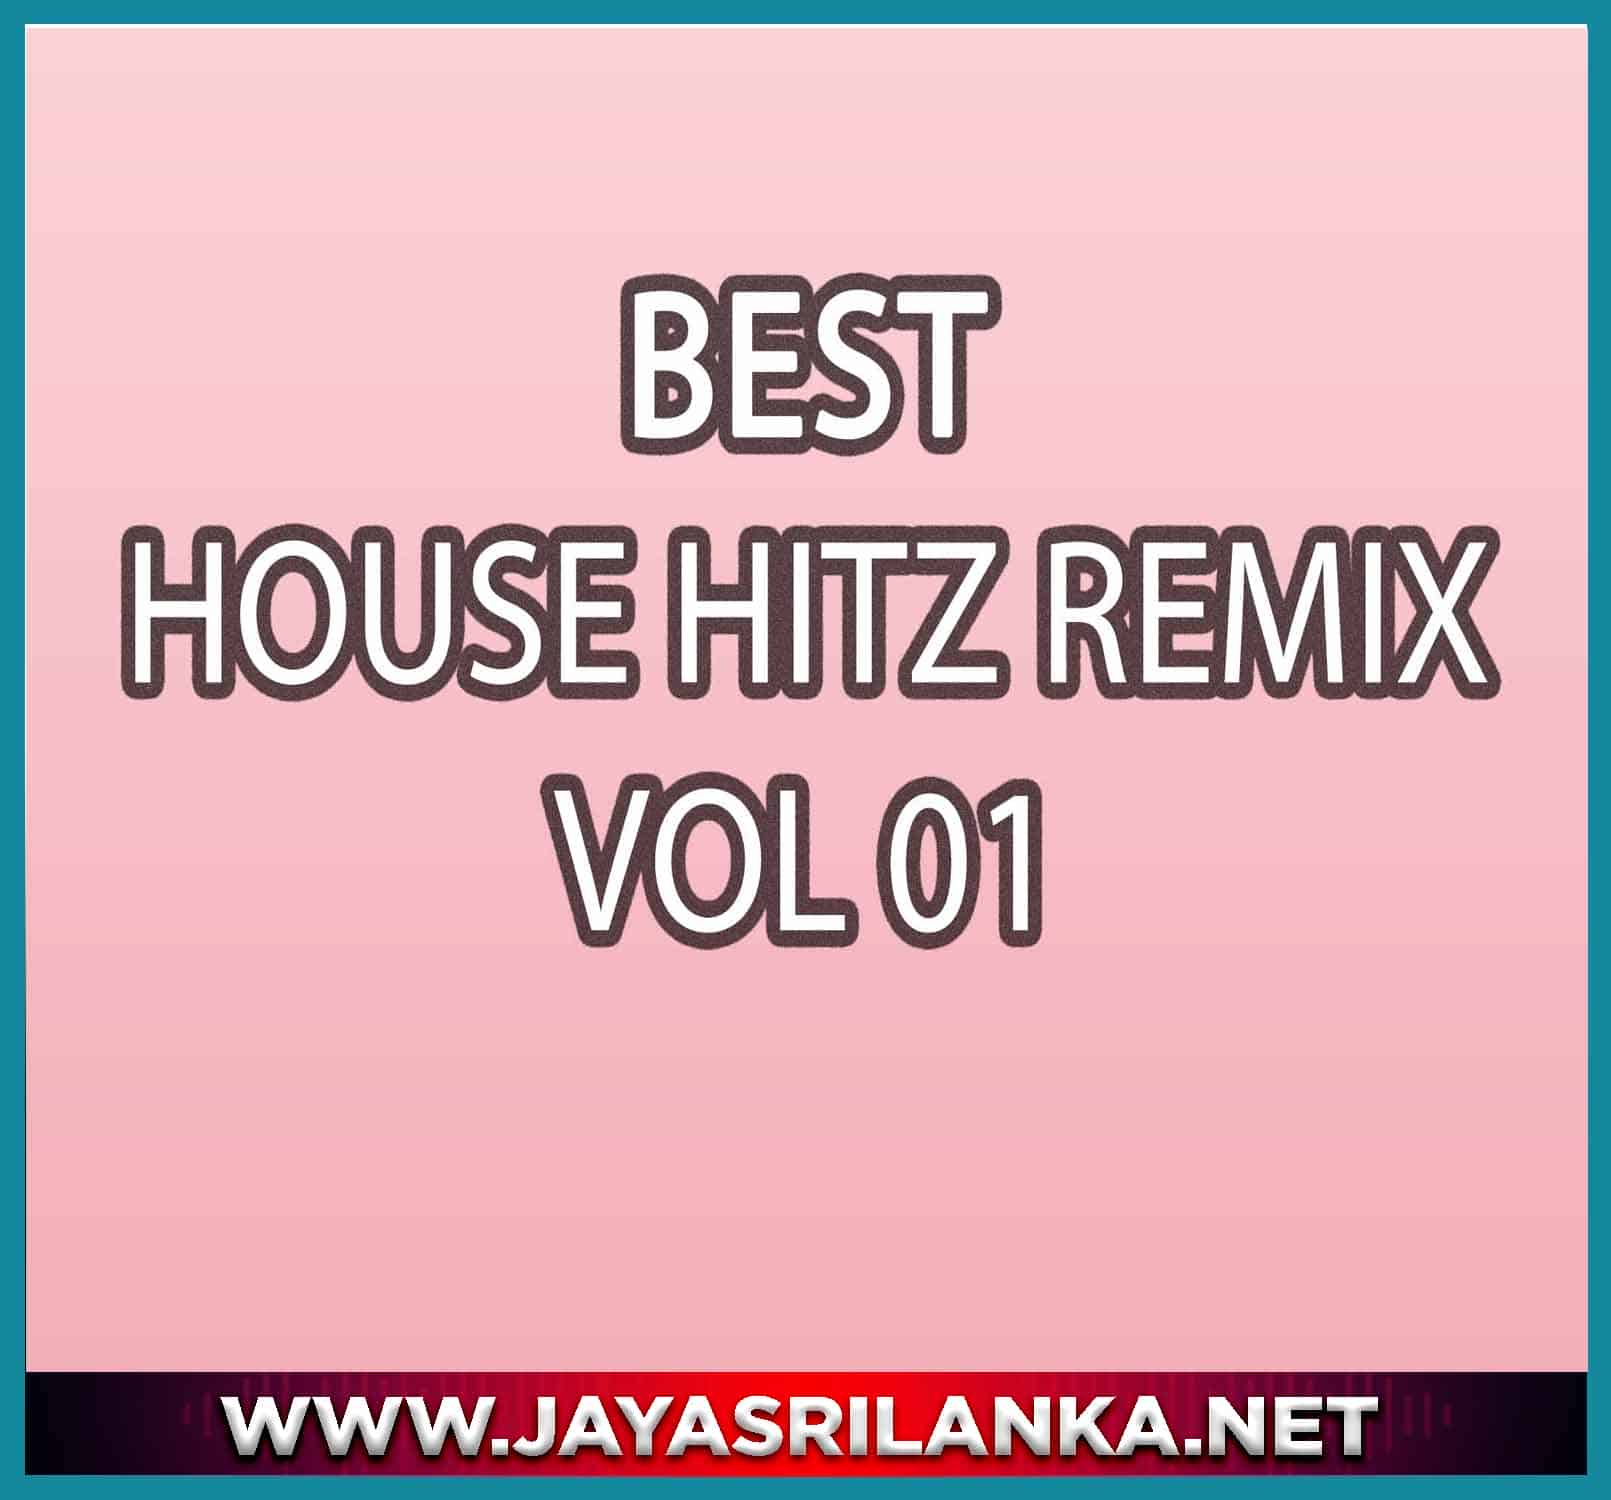 01 - Sarath Sande Reyata Remix - Best House Hitz Vol 01 mp3 Image